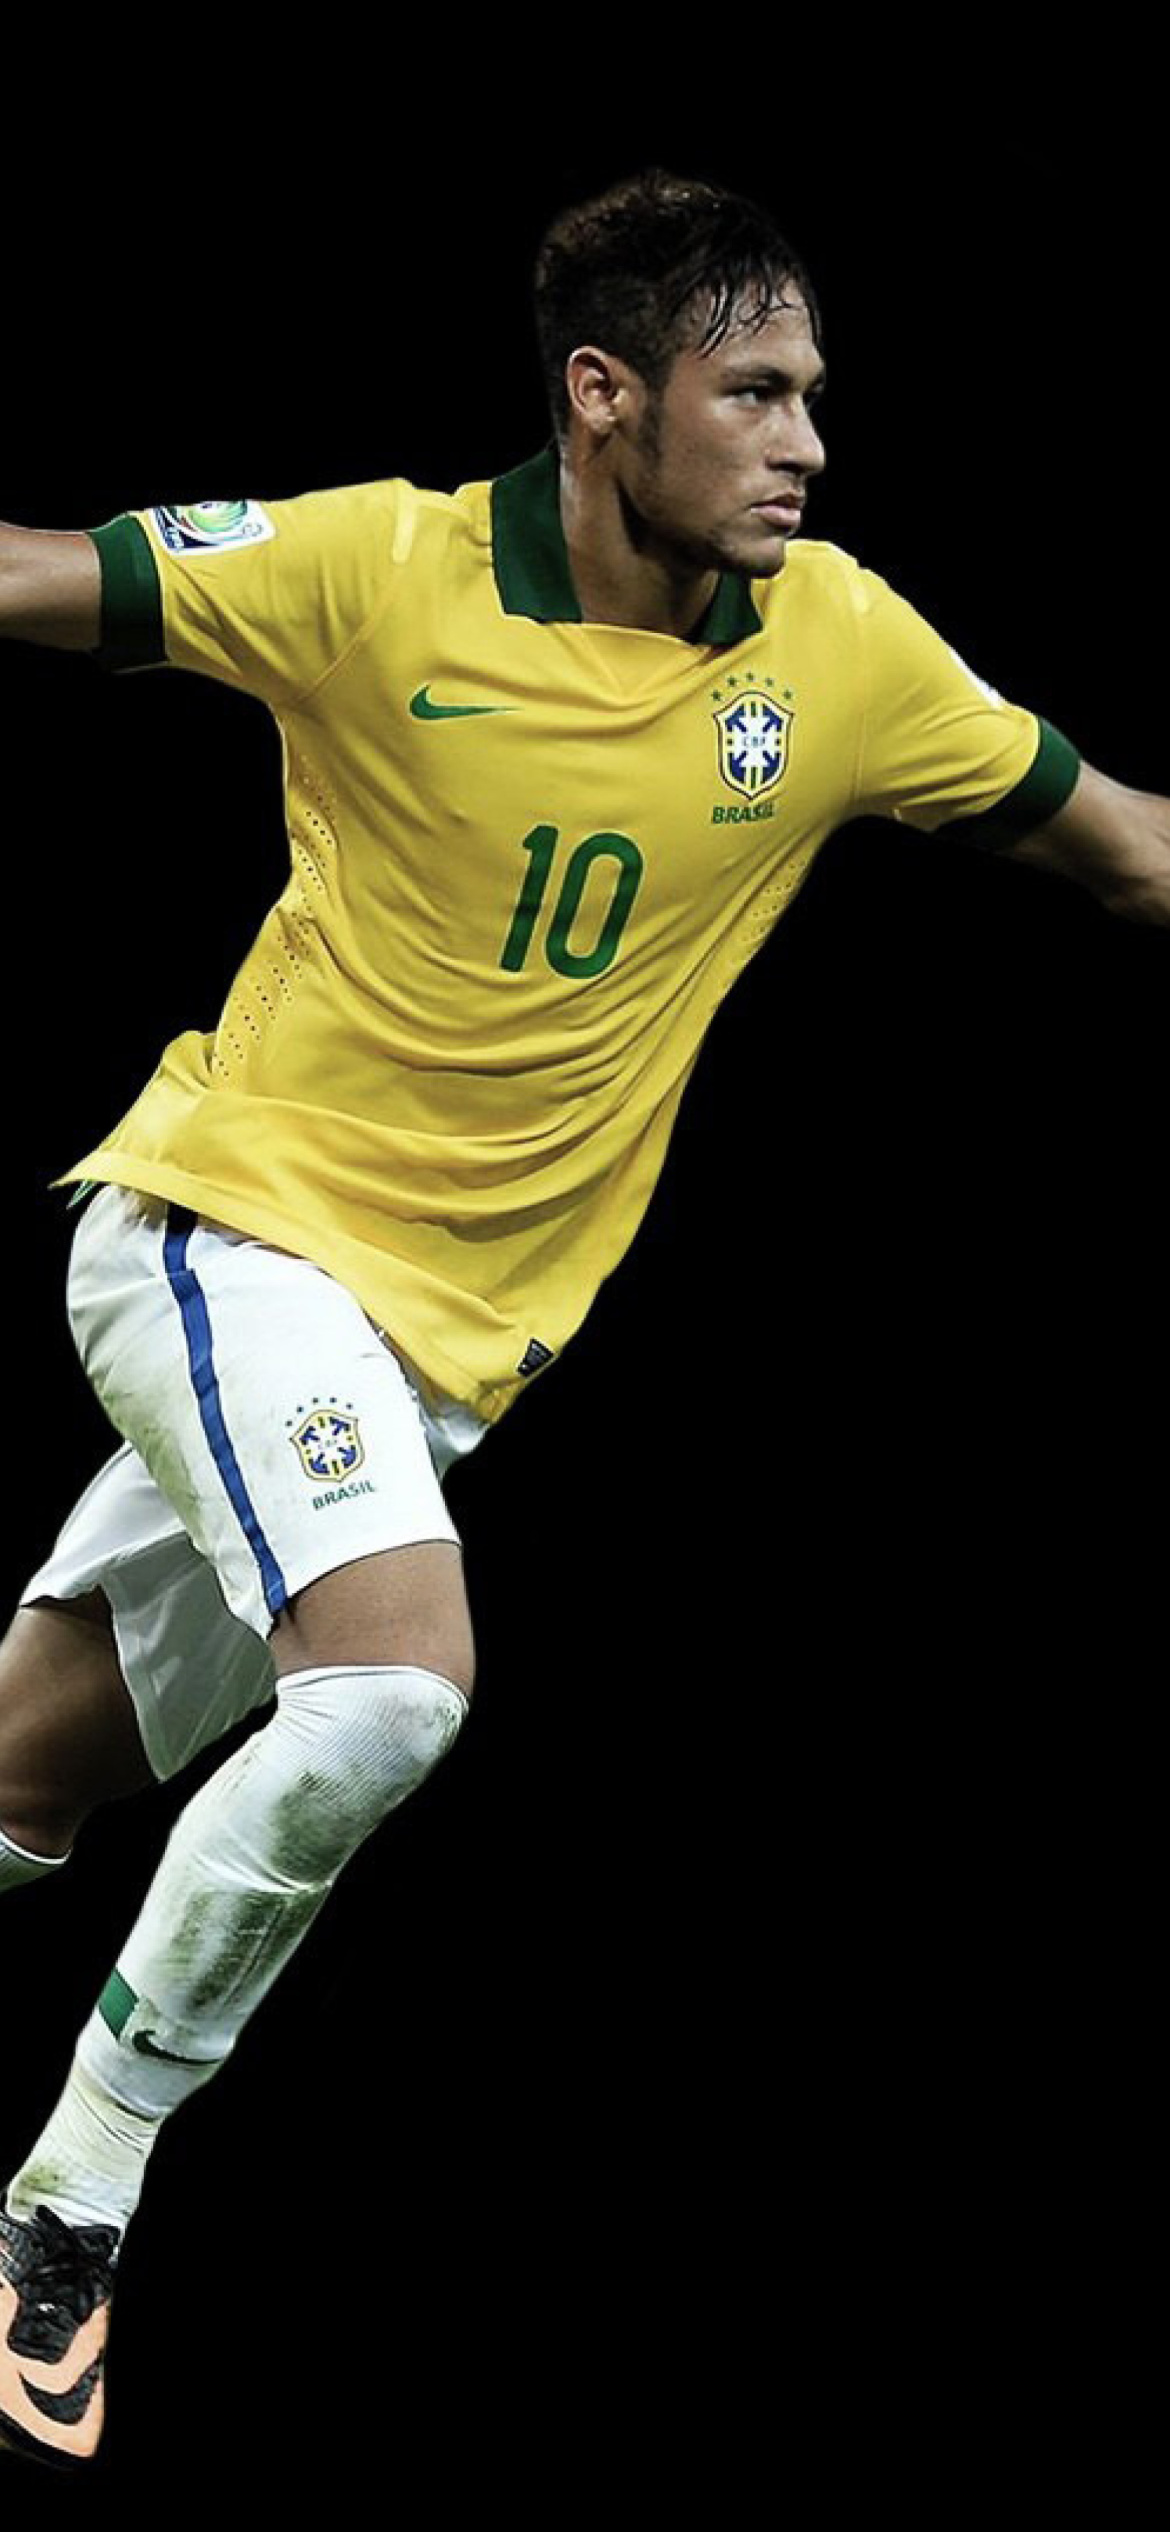 Neymar Brazil Football Player wallpaper 1170x2532